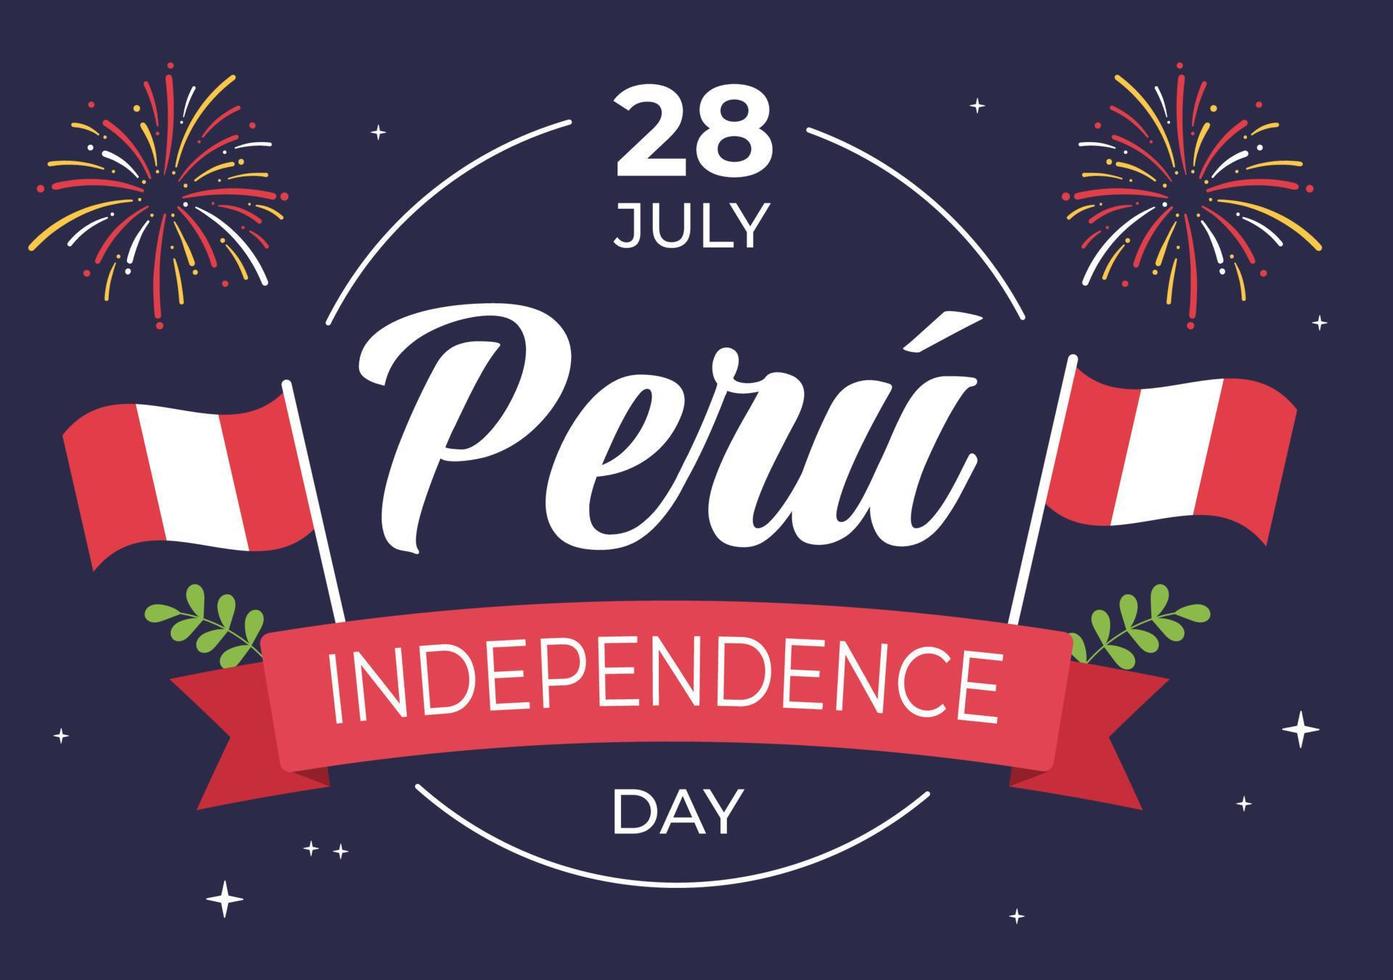 felices fiestas patrias oder peruanische unabhängigkeitstag niedliche karikaturillustration mit flagge für nationalfeiertag peru feier am 28. juli im flachen hintergrund vektor